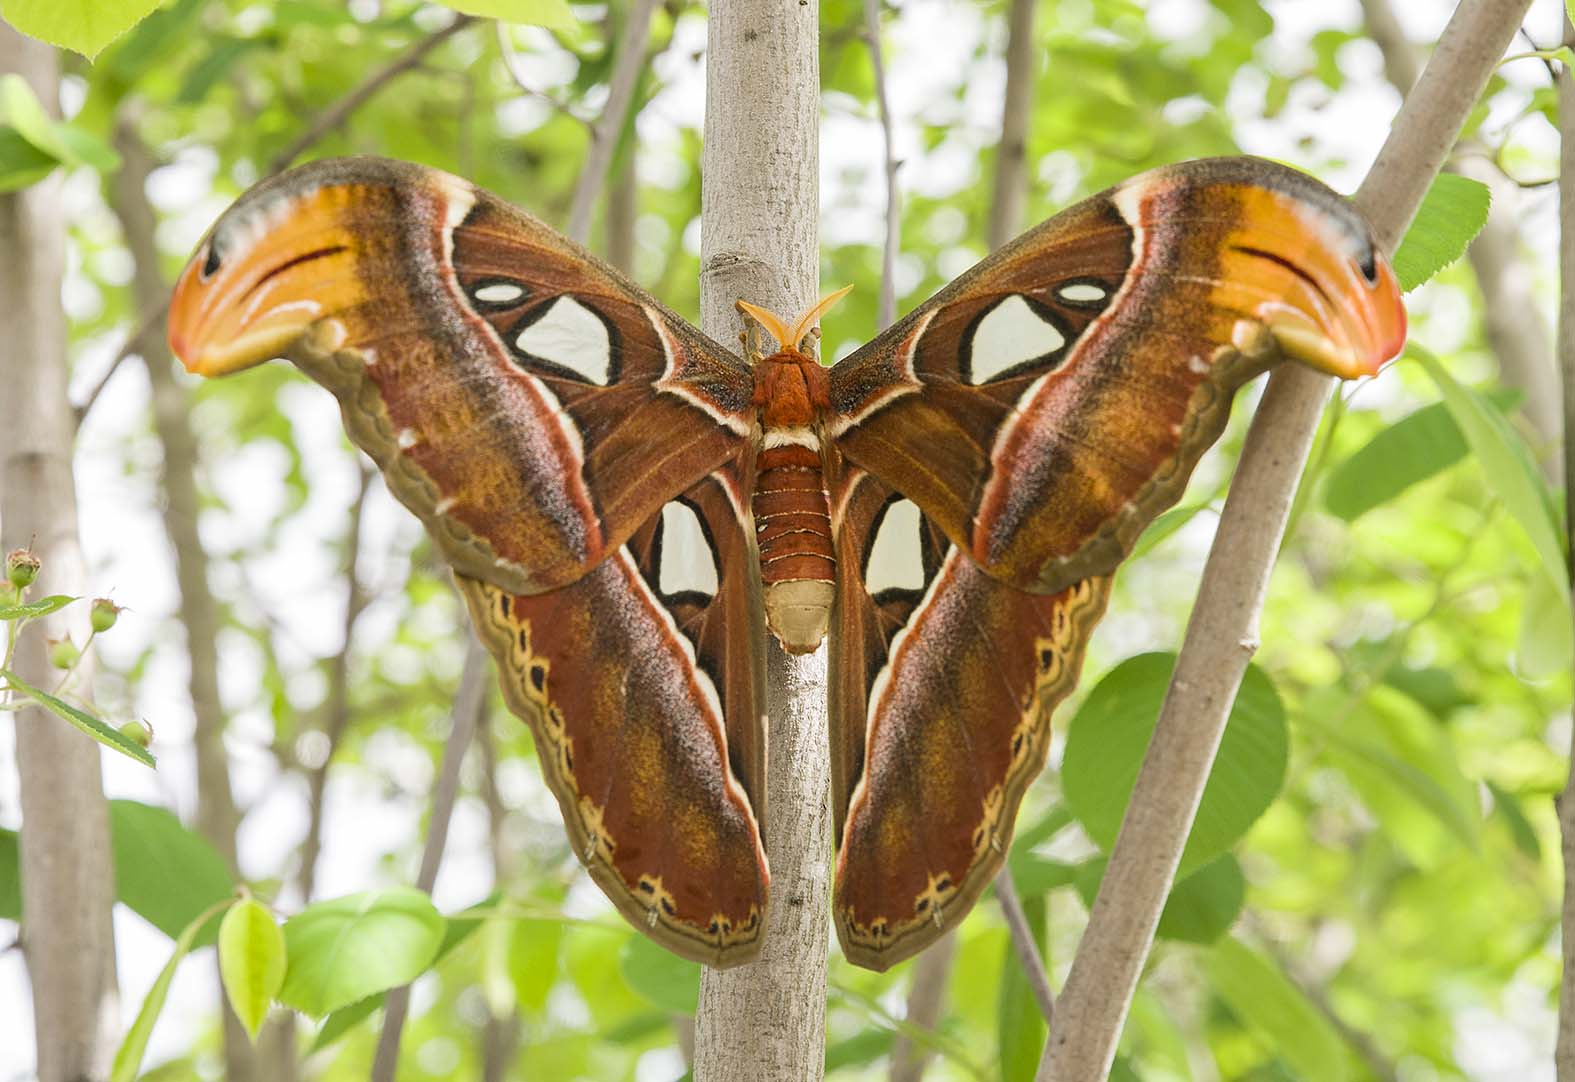 Atlas Moth Emerges in Butterflies & Blooms